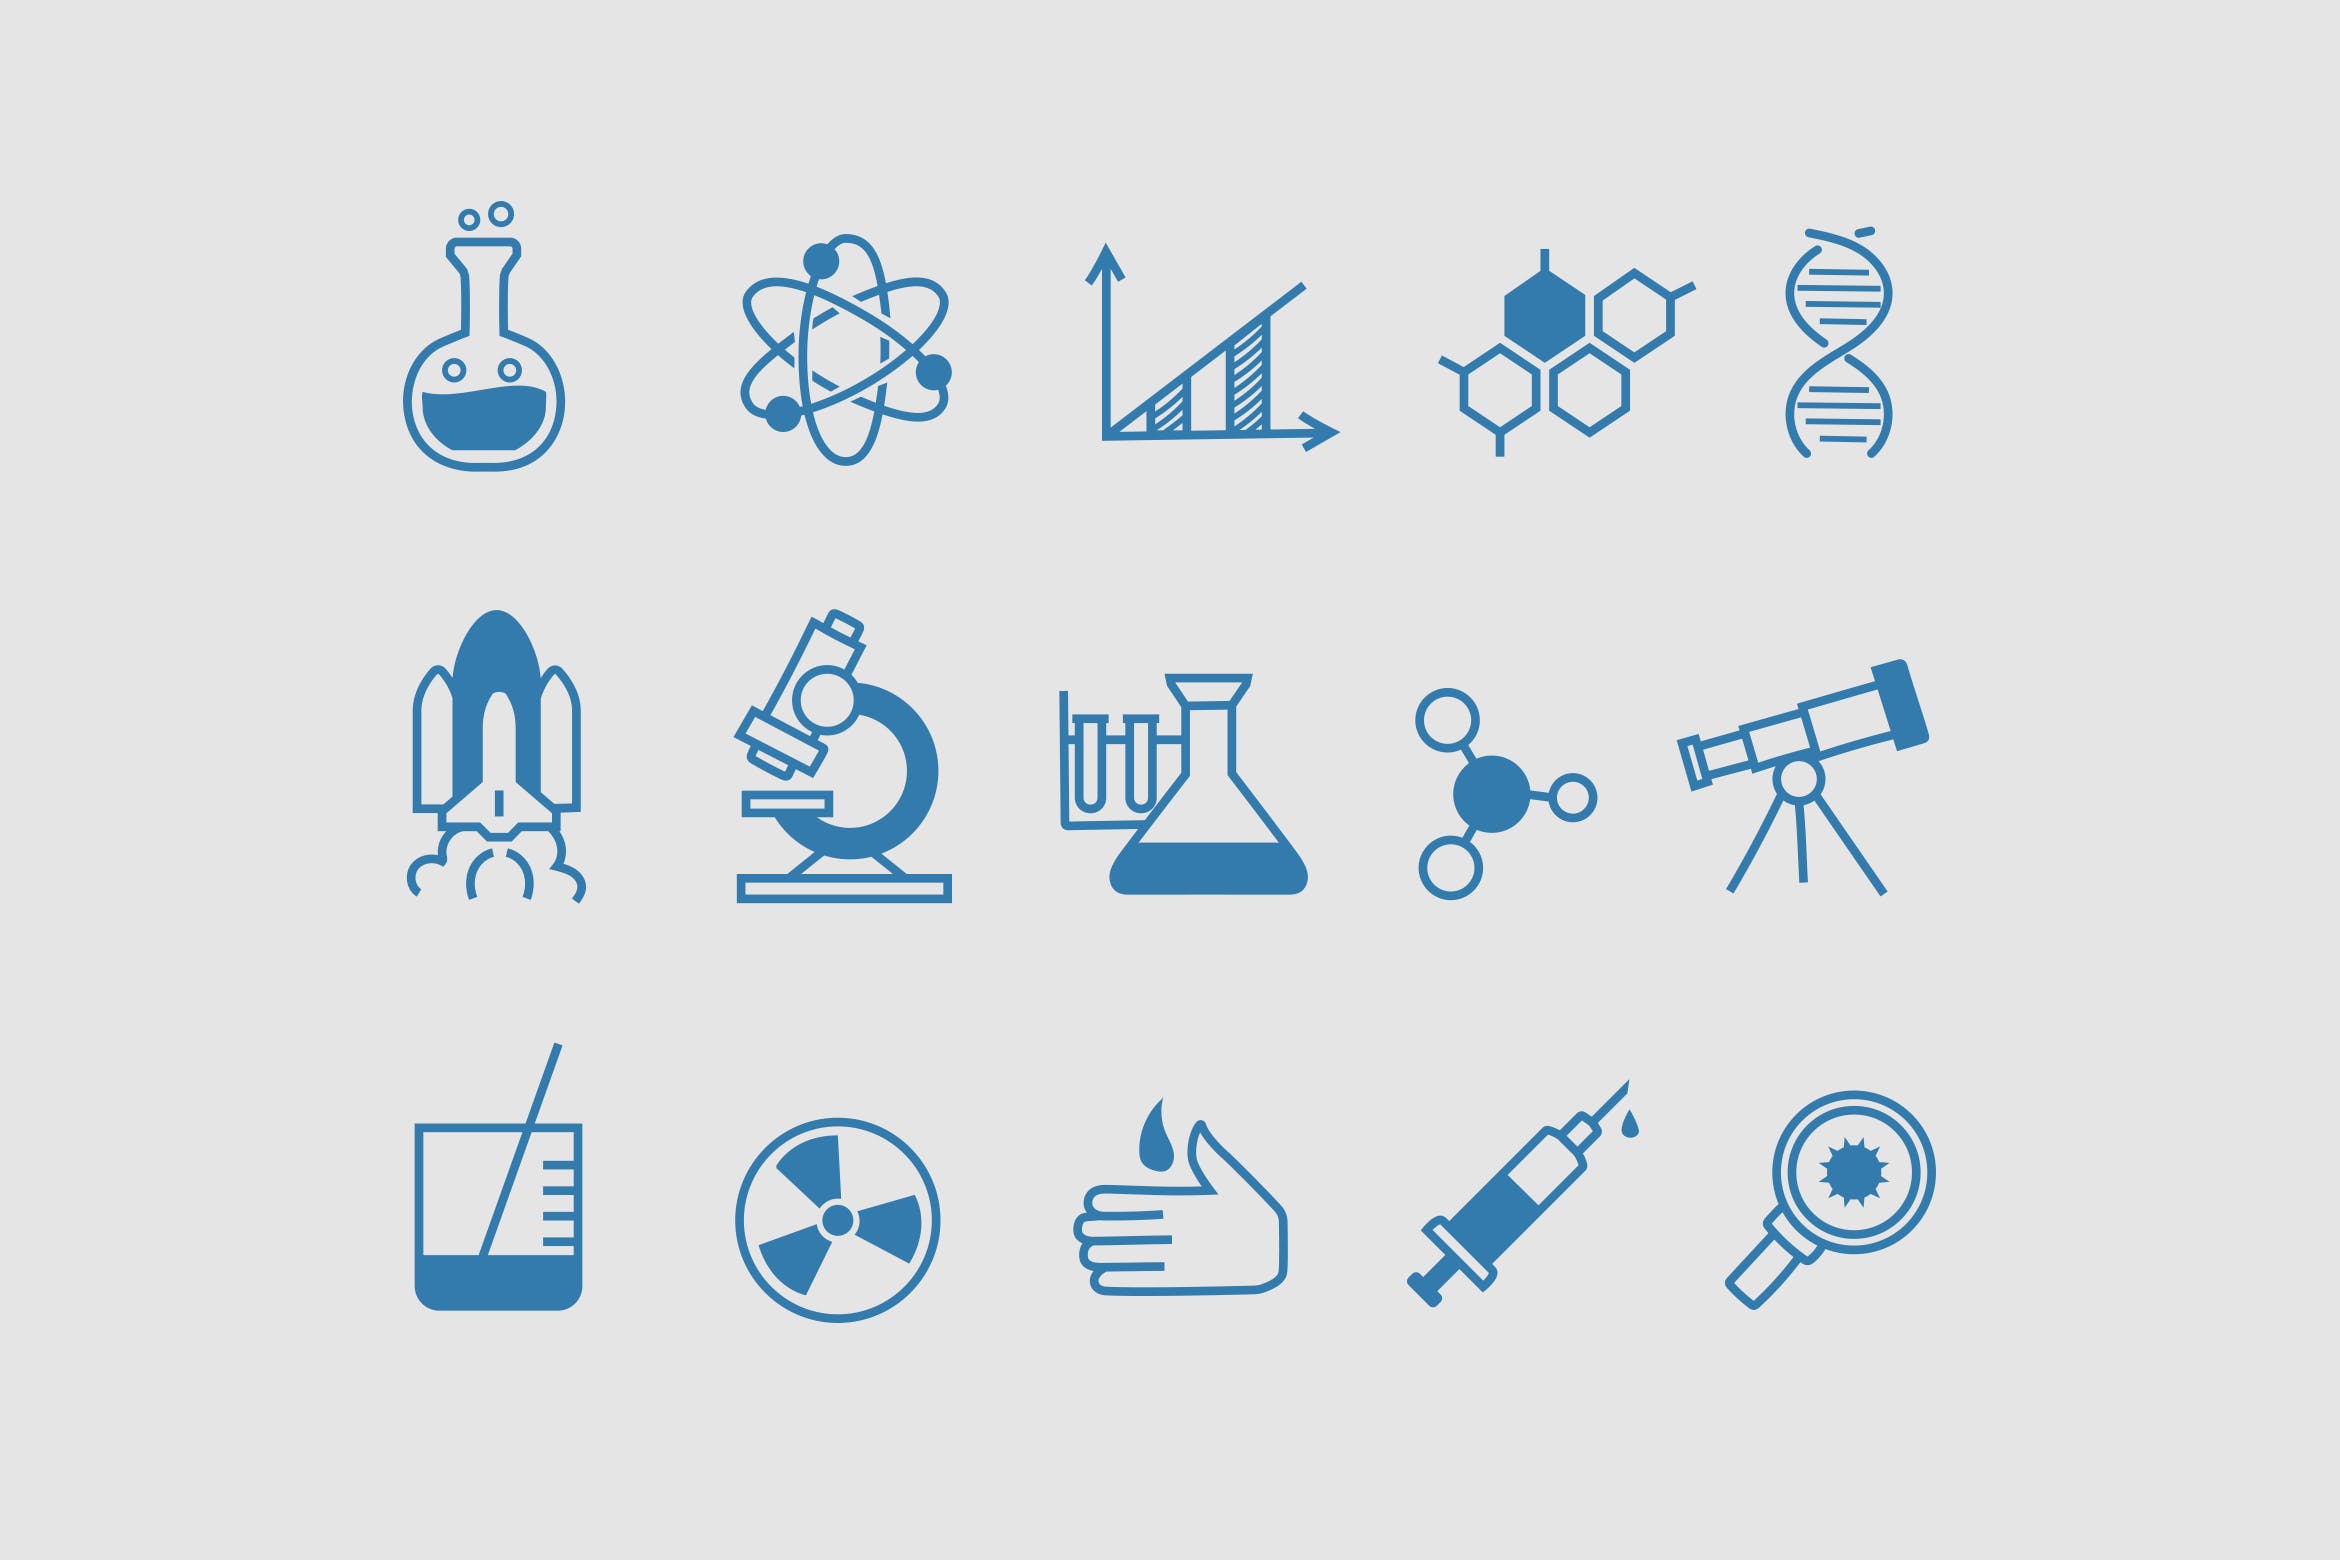 15枚自然科学涂鸦图标素材 15 Science Doodle Icons插图